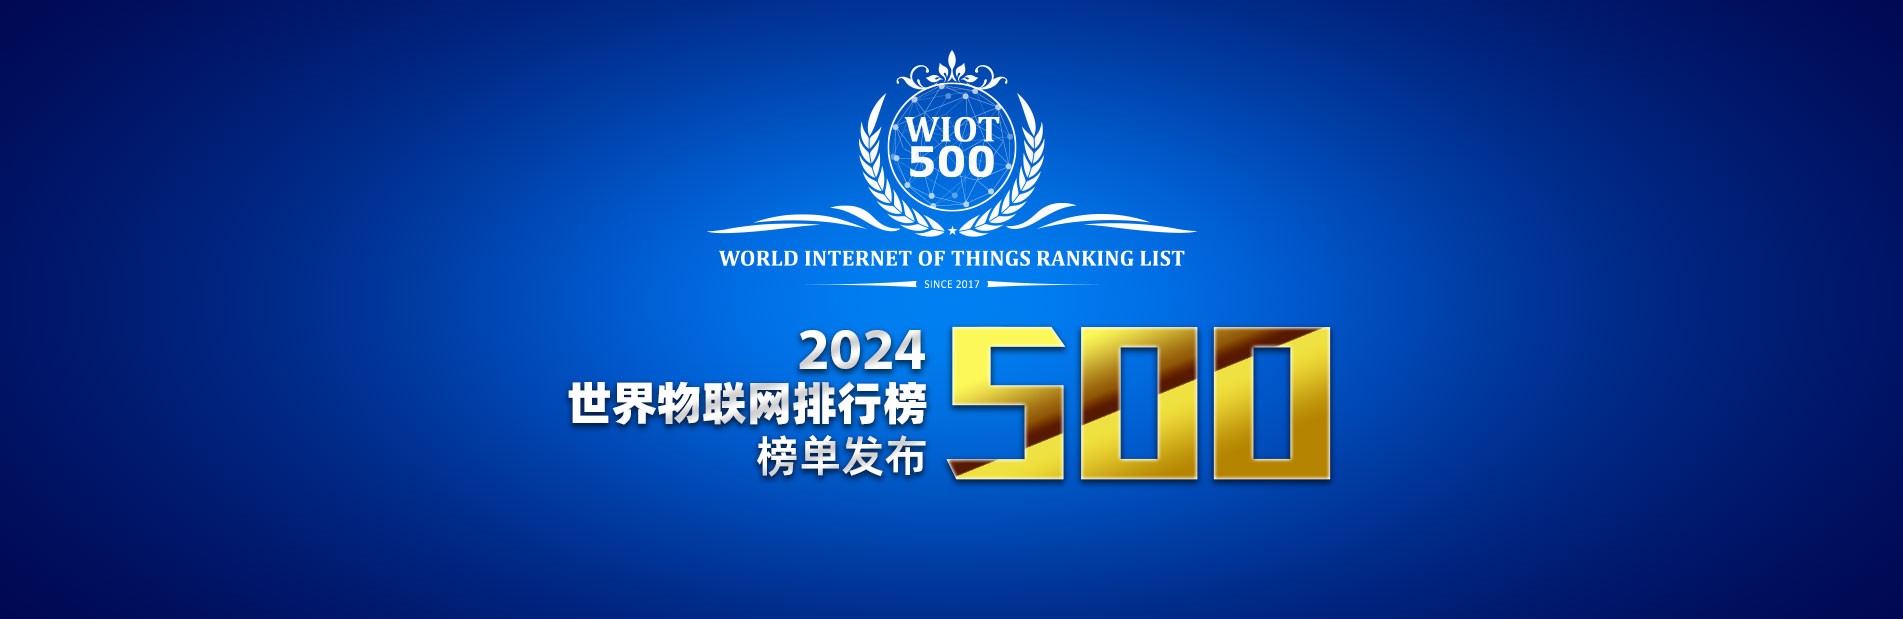 2024世界物联网500强排行榜发布